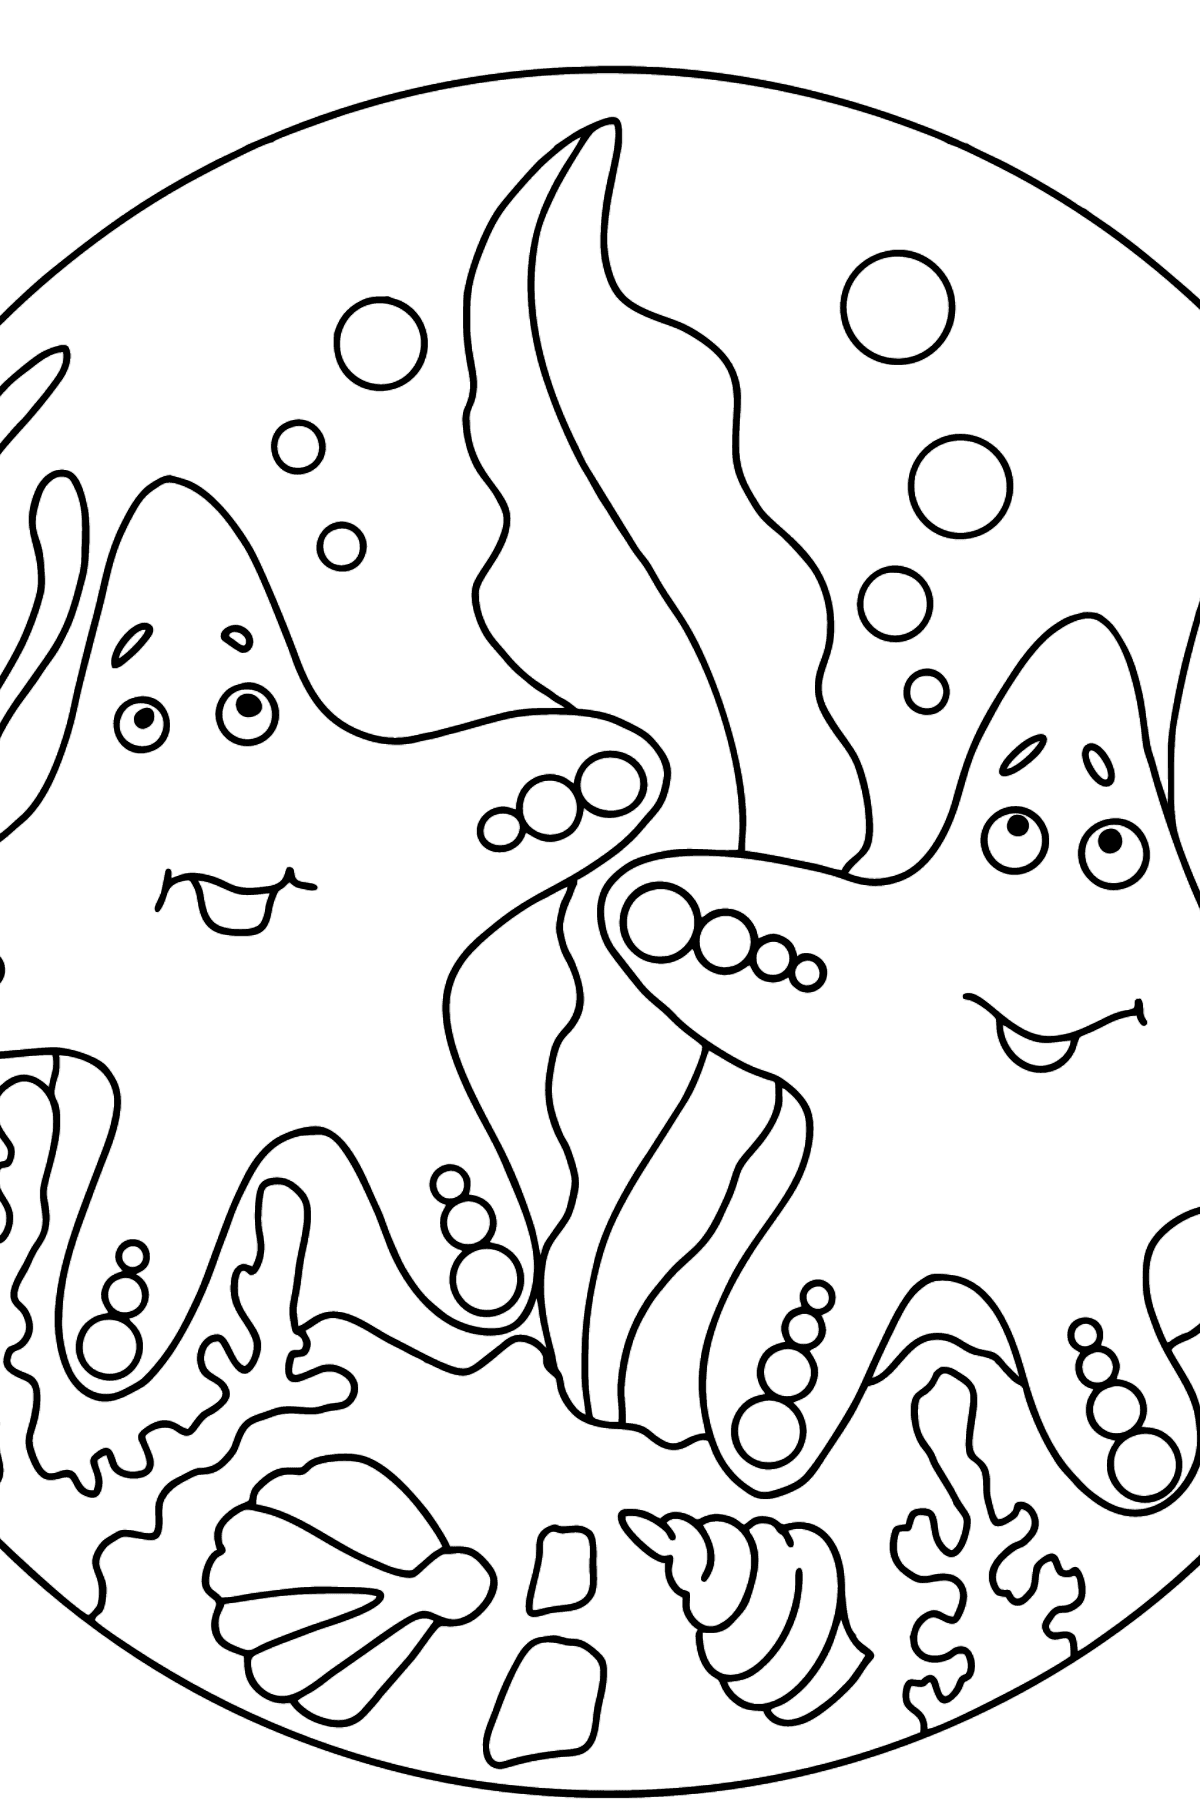 Dibujo para colorear Dos estrellas de mar (fácil) - Dibujos para Colorear para Niños